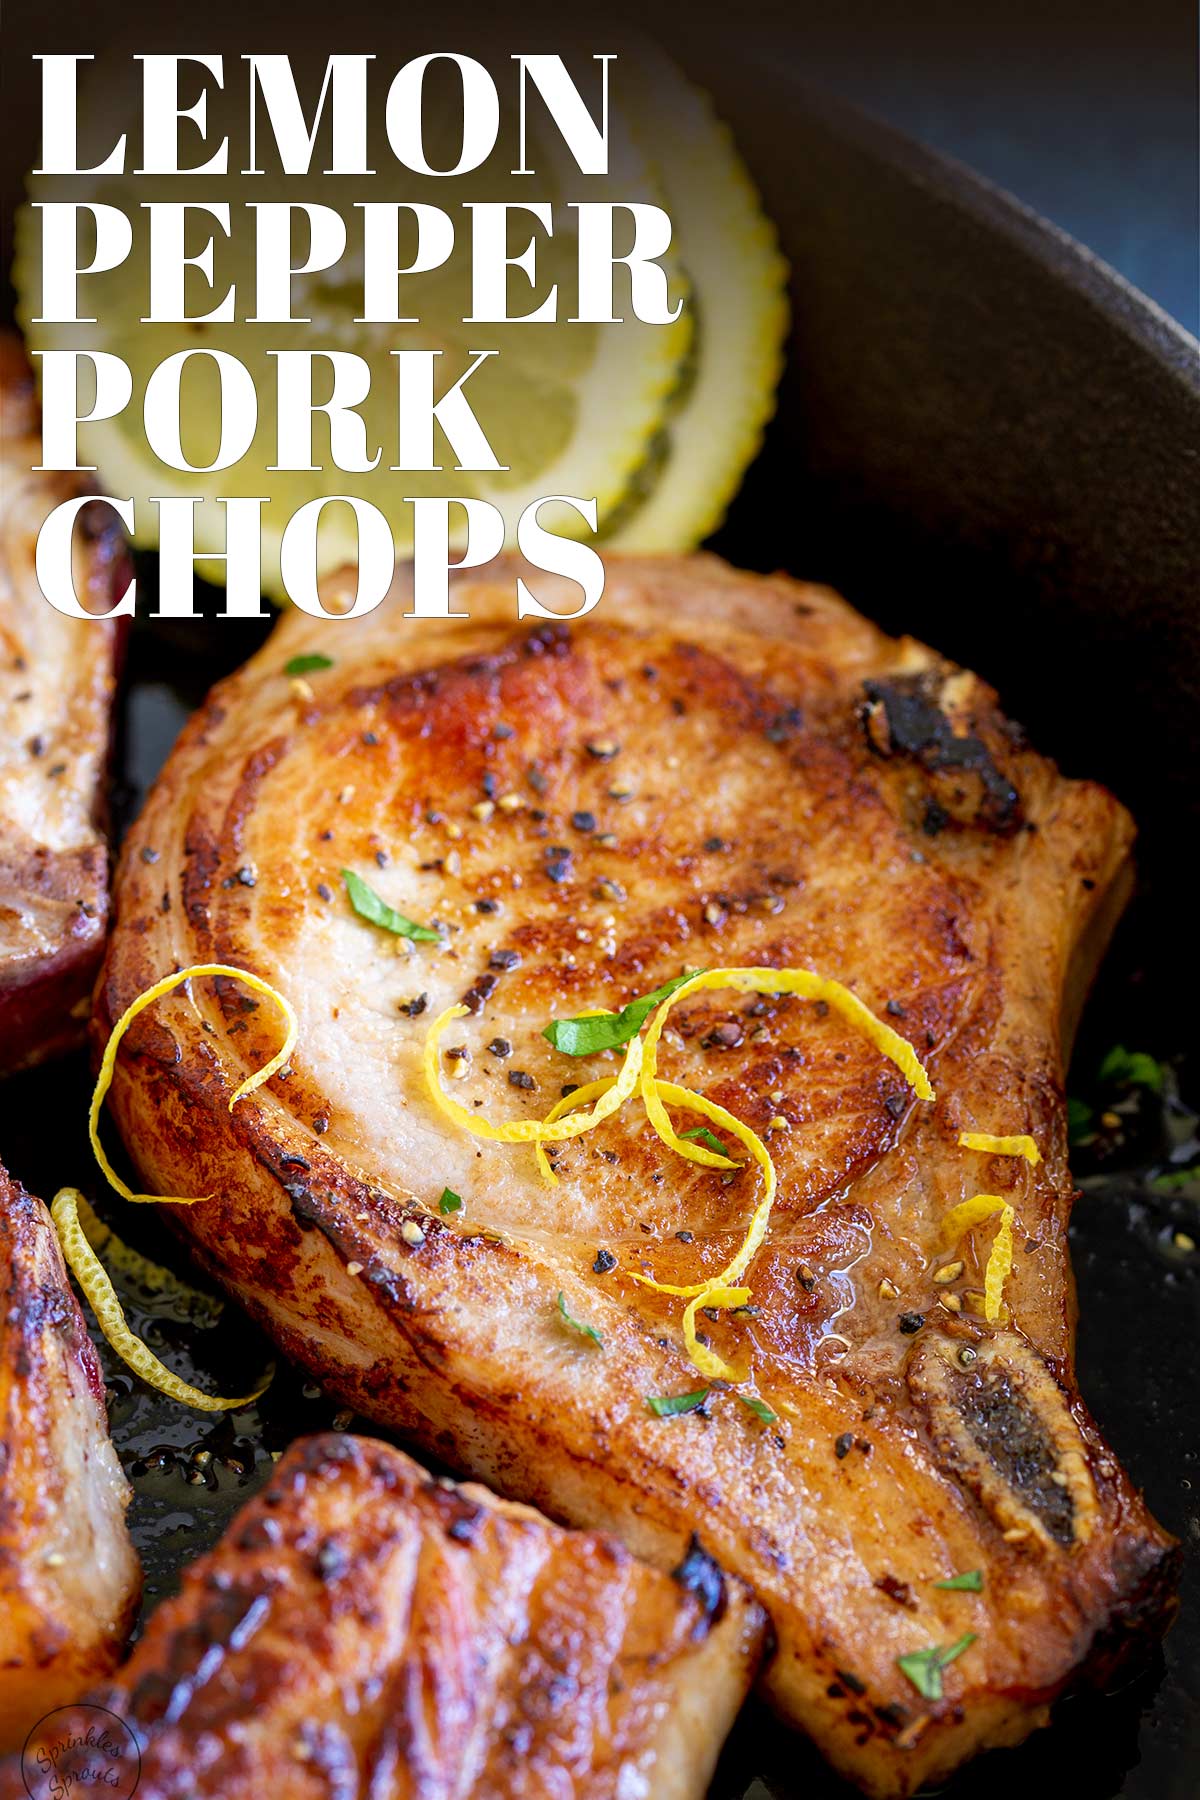 PINTEREST IMAGE - lemon pepper pork chops with text overlay